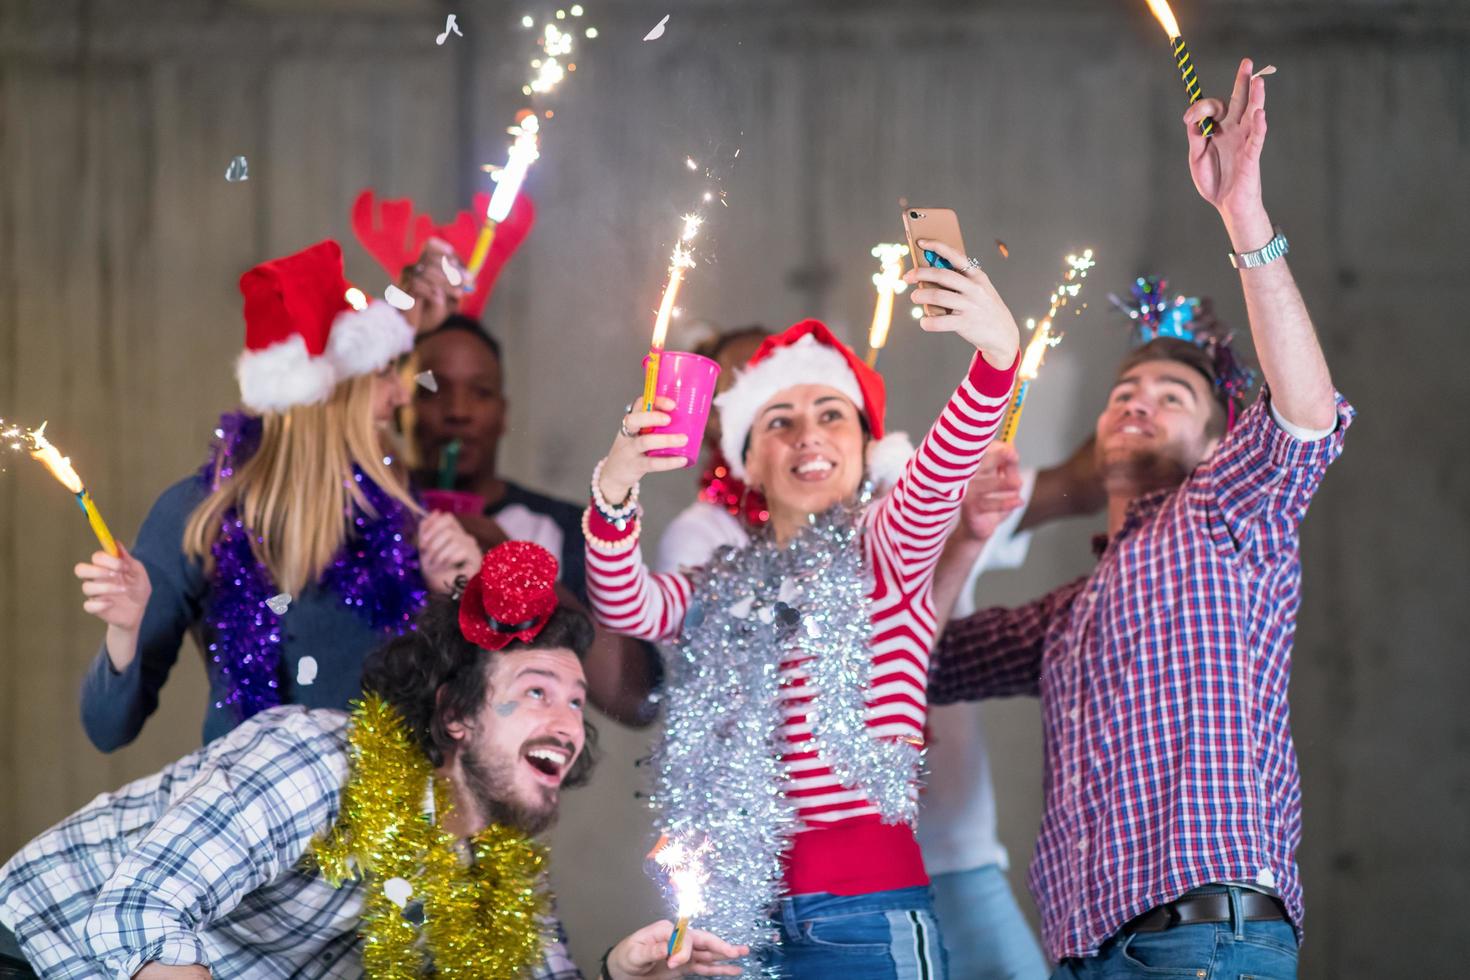 grupo multiétnico de gente de negocios casual tomando selfie durante la fiesta de año nuevo foto